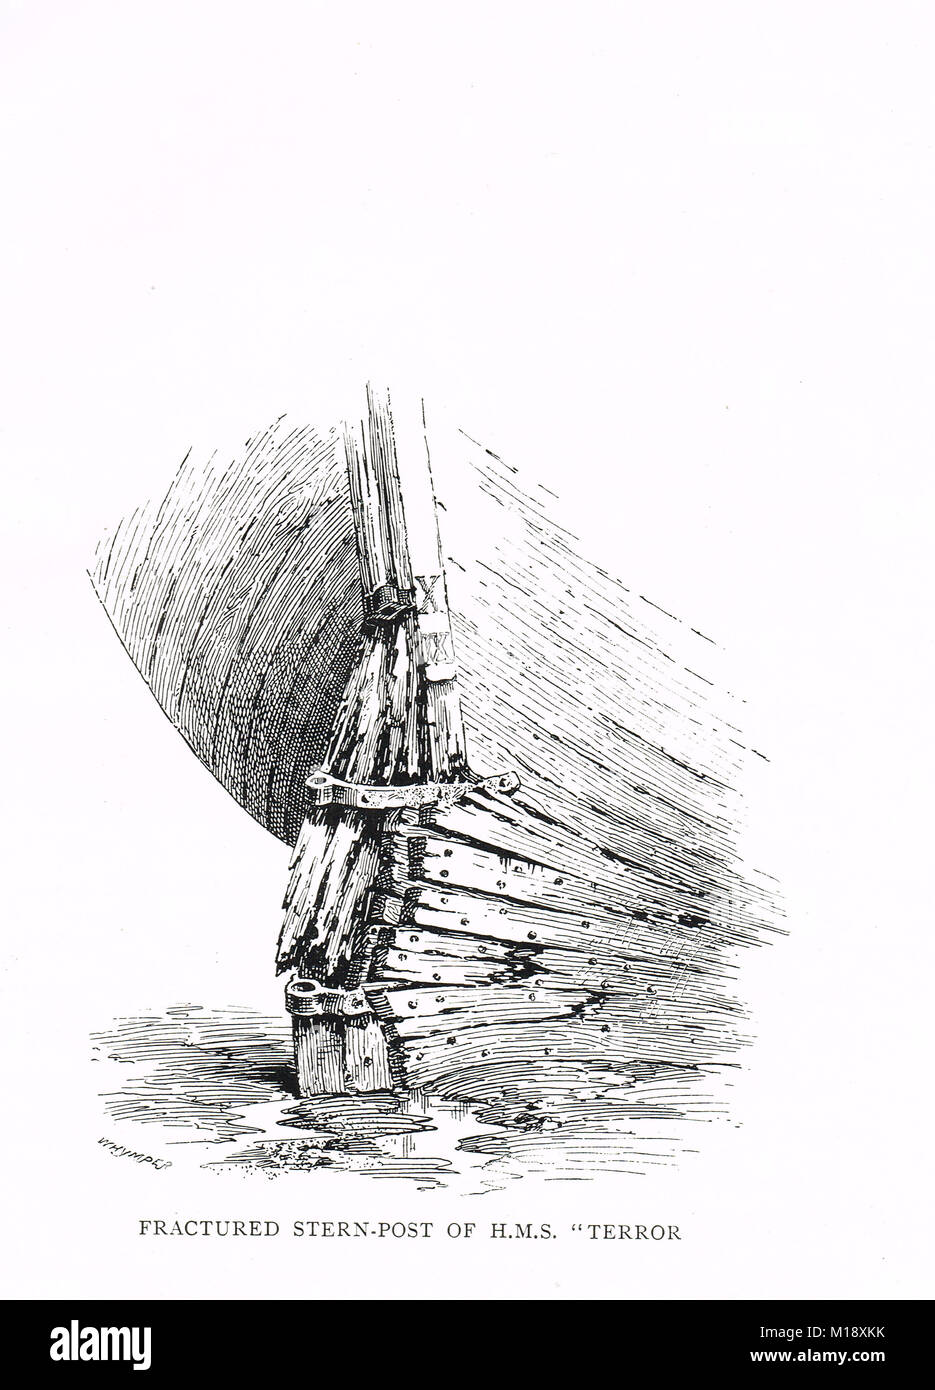 Poste de stern fracturé du HMS Terror, pris dans les glaces. Le capitaine George Back's Arctic expedition à la baie d'Hudson, 1836-1837 Banque D'Images